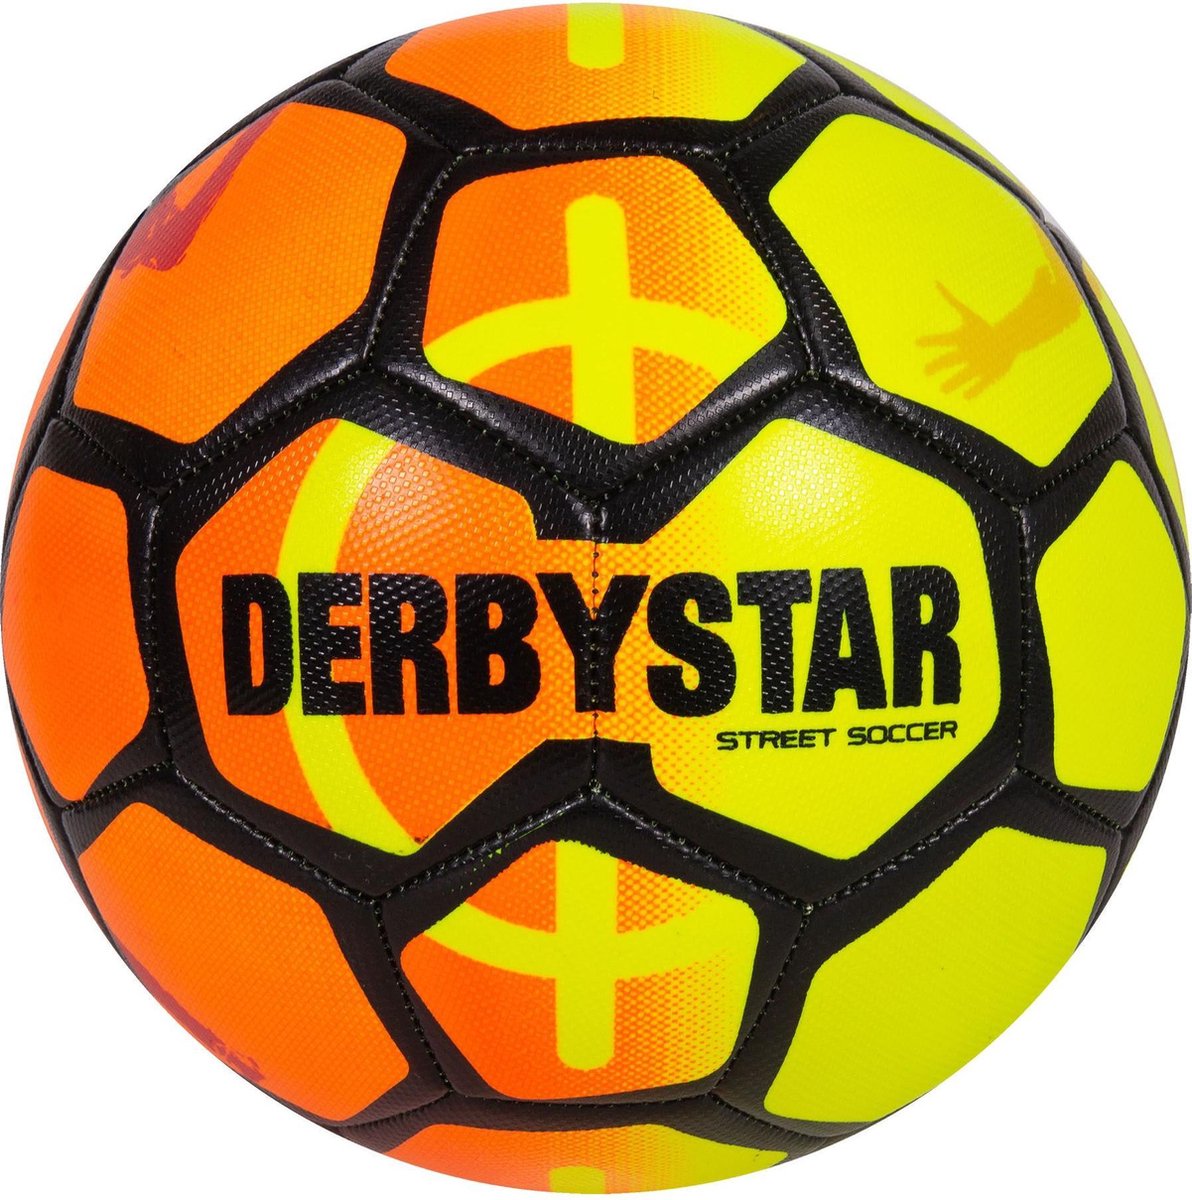 bol.com | Derbystar Derbystar Street Soccer Ball Voetbal - Oranje - Maat 5